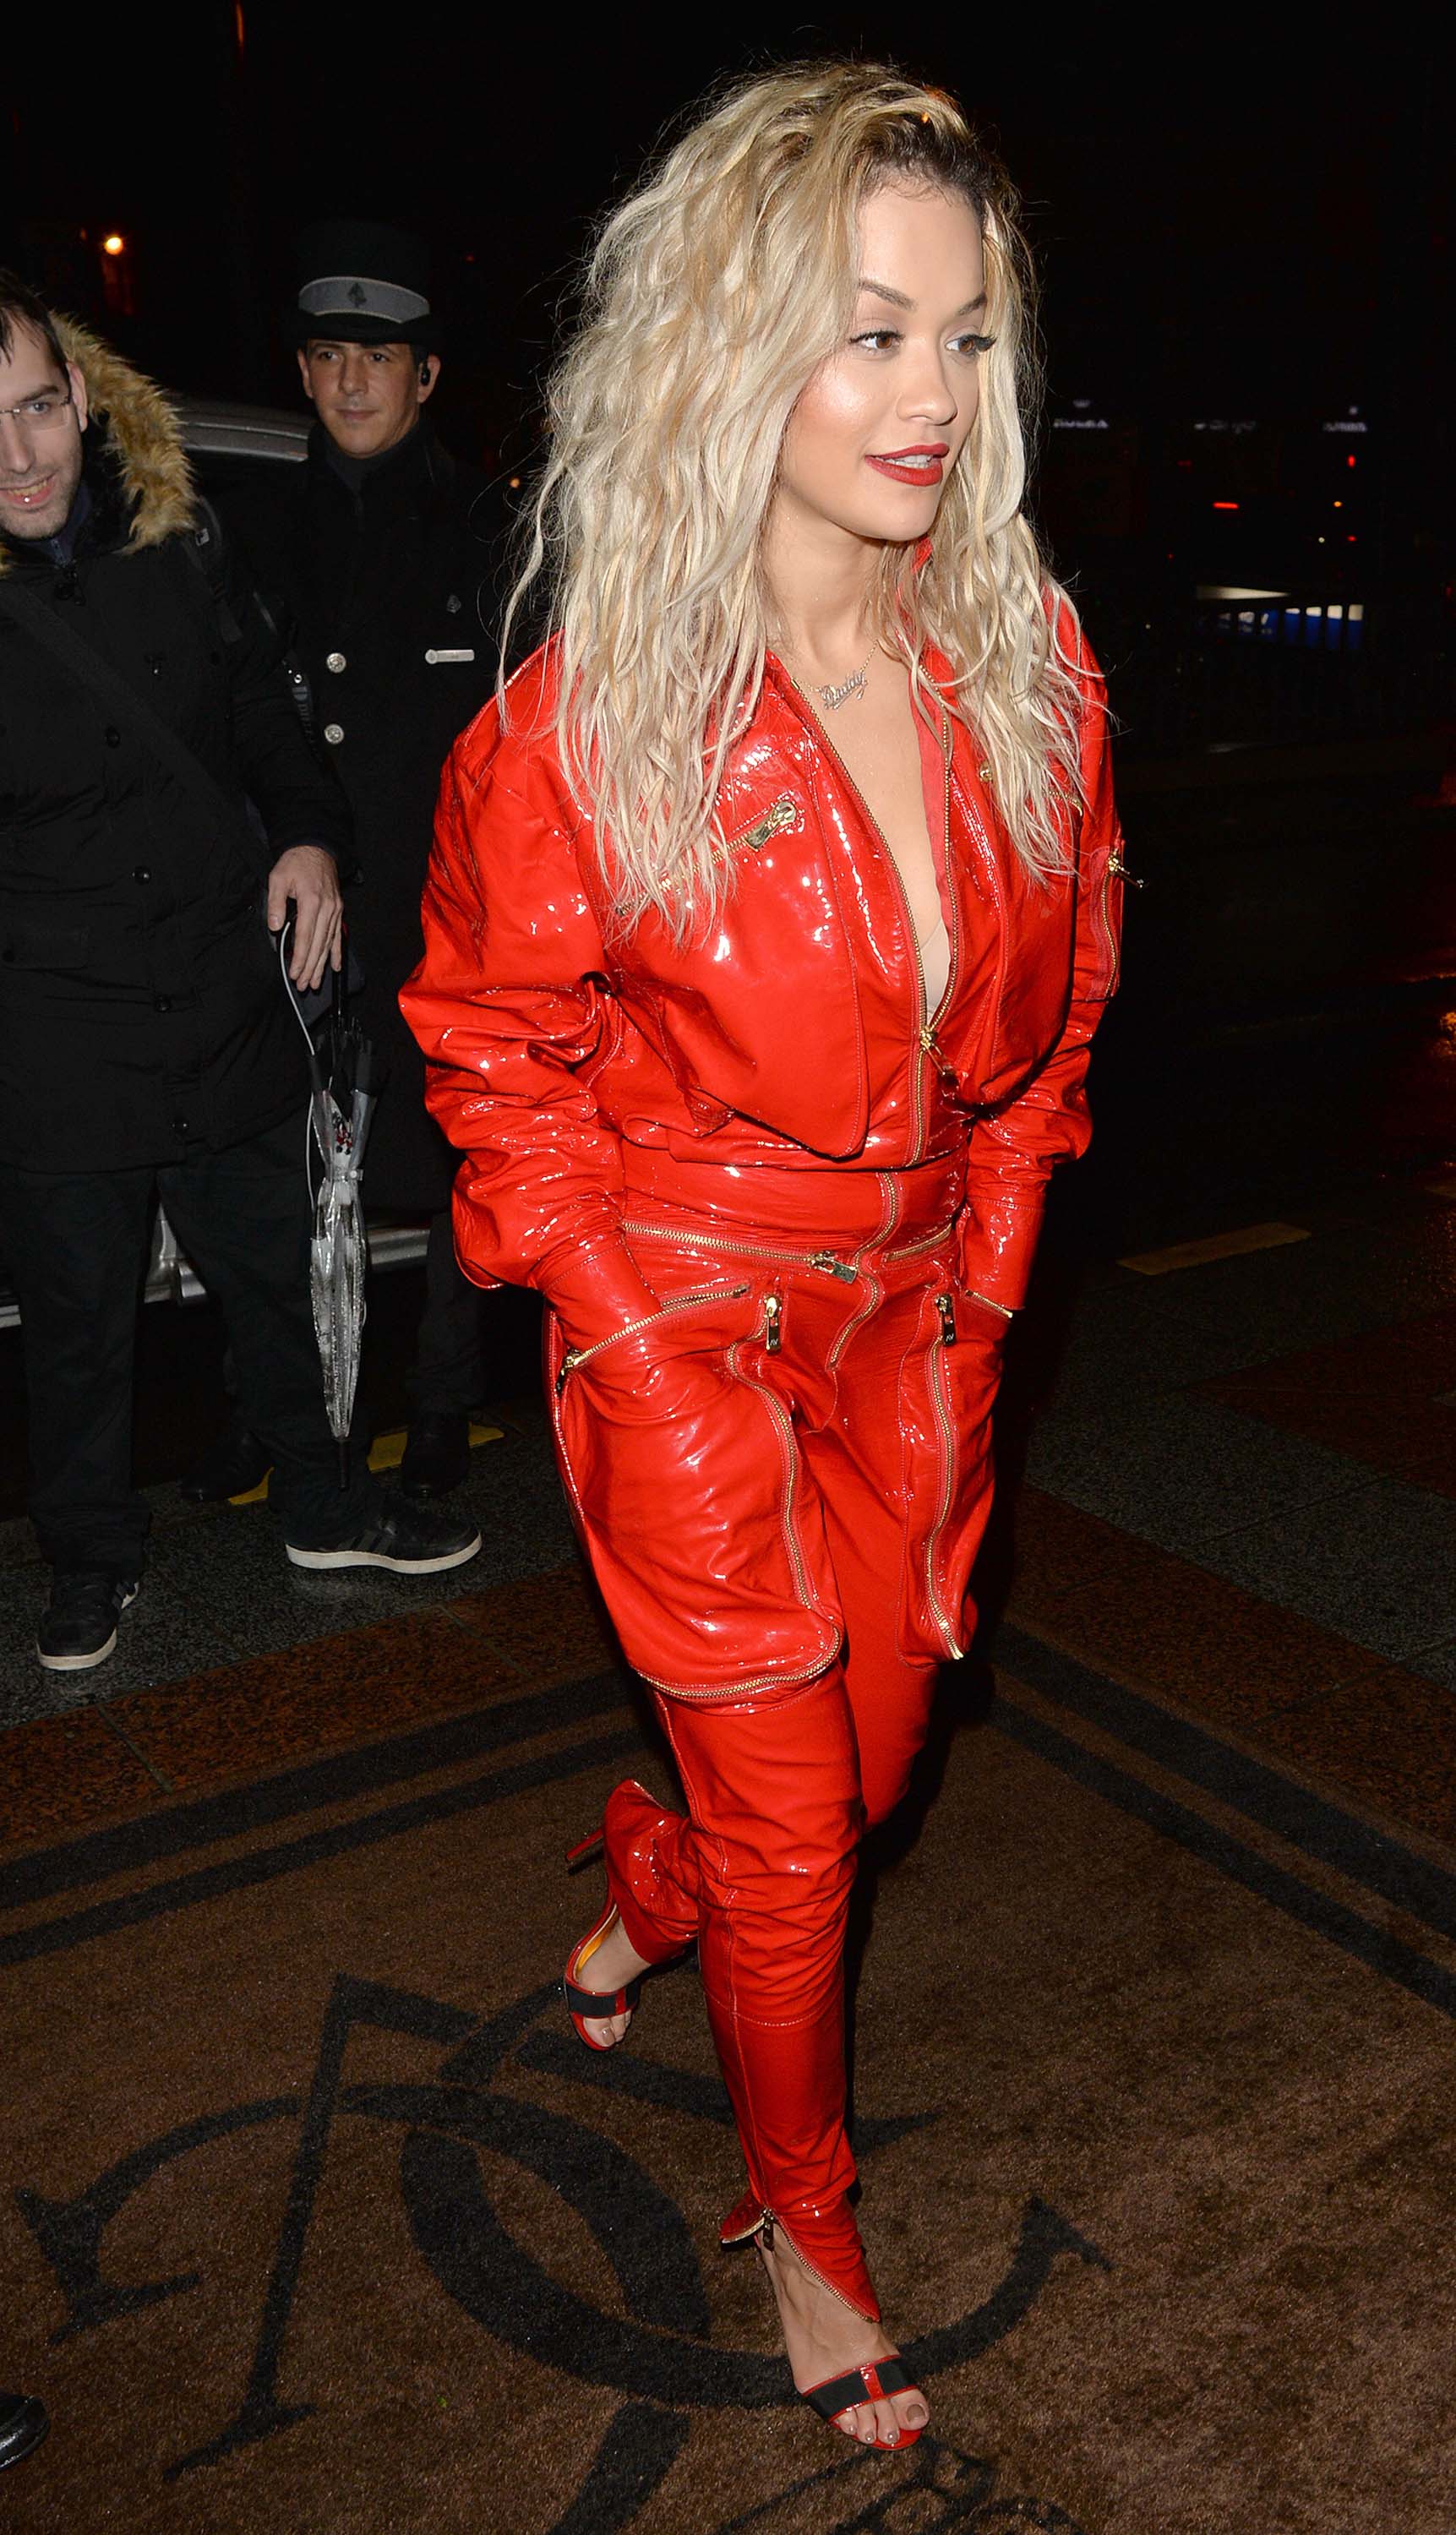 Rita Ora leaving an event in Paris